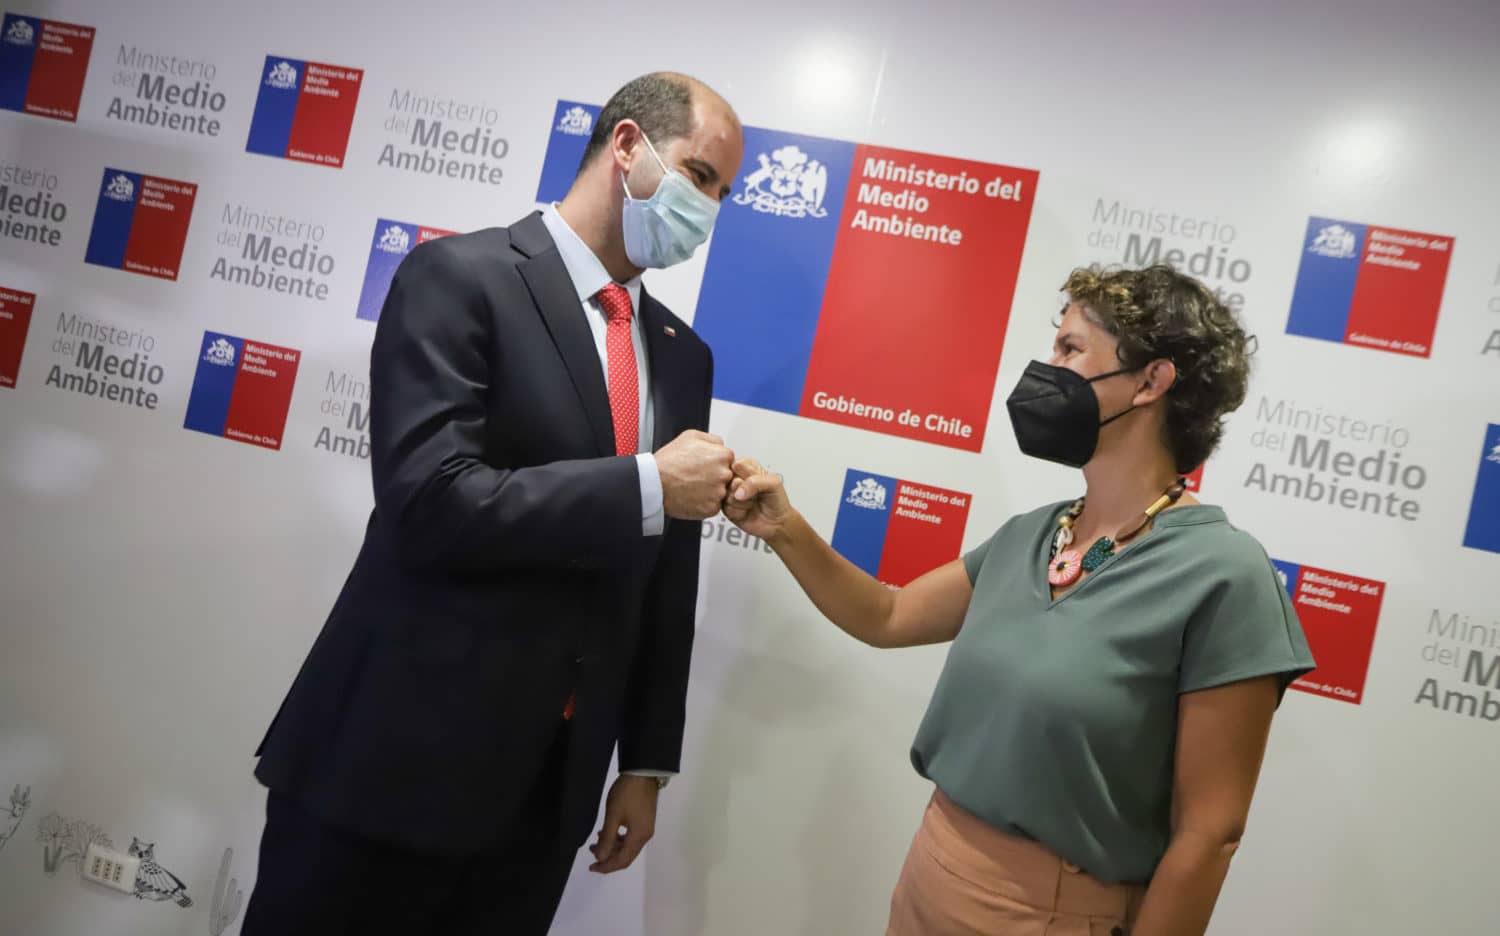 Javier Naranjo y Maisa Rojas inician reuniones de traspaso en el Ministerio del Medio Ambiente